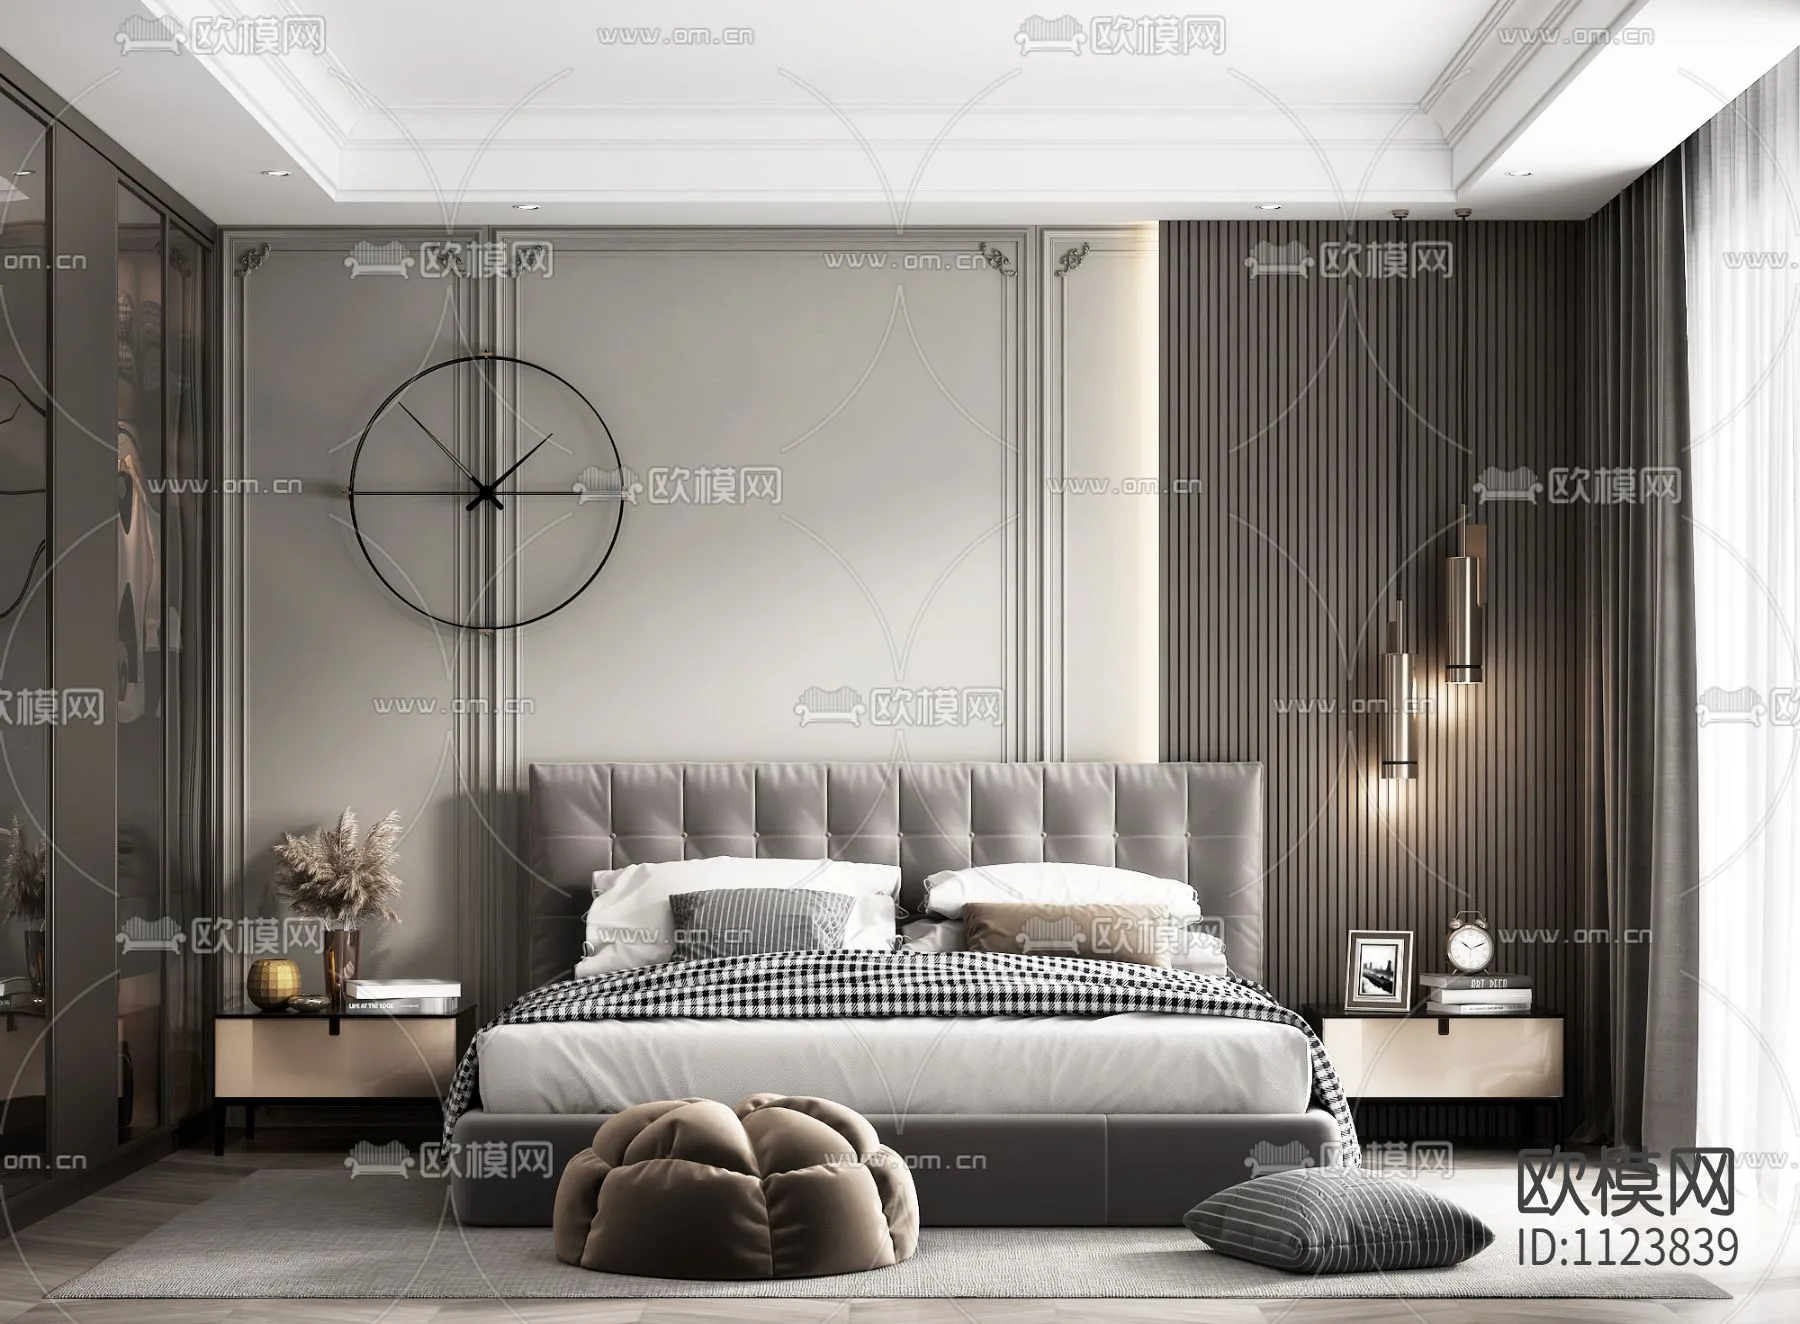 Bedroom 3D Scenes – 0182